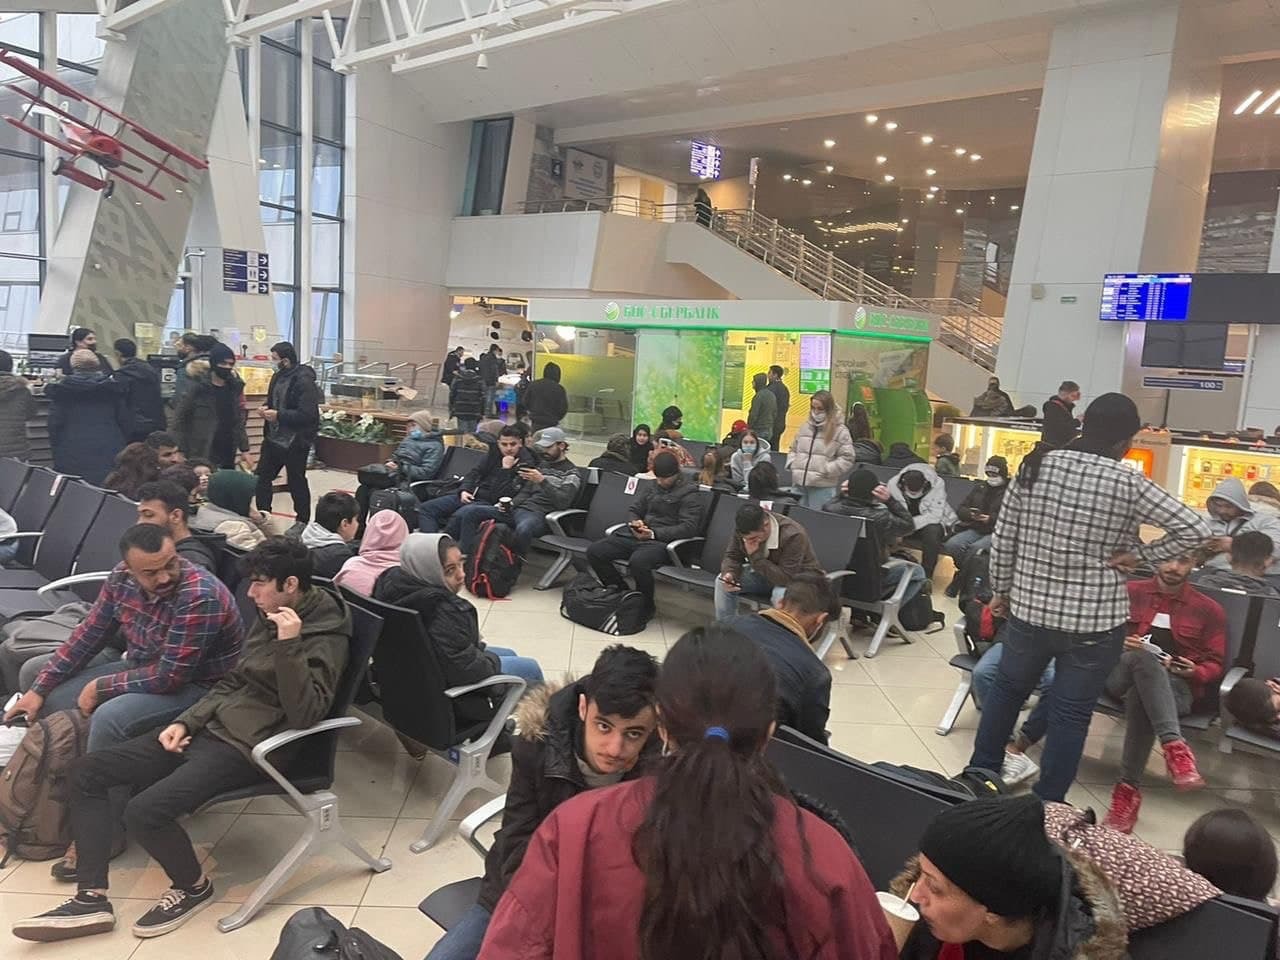 لاجئون عراقيون في المطار بانتظار الطائرة/ روسيا اليوم